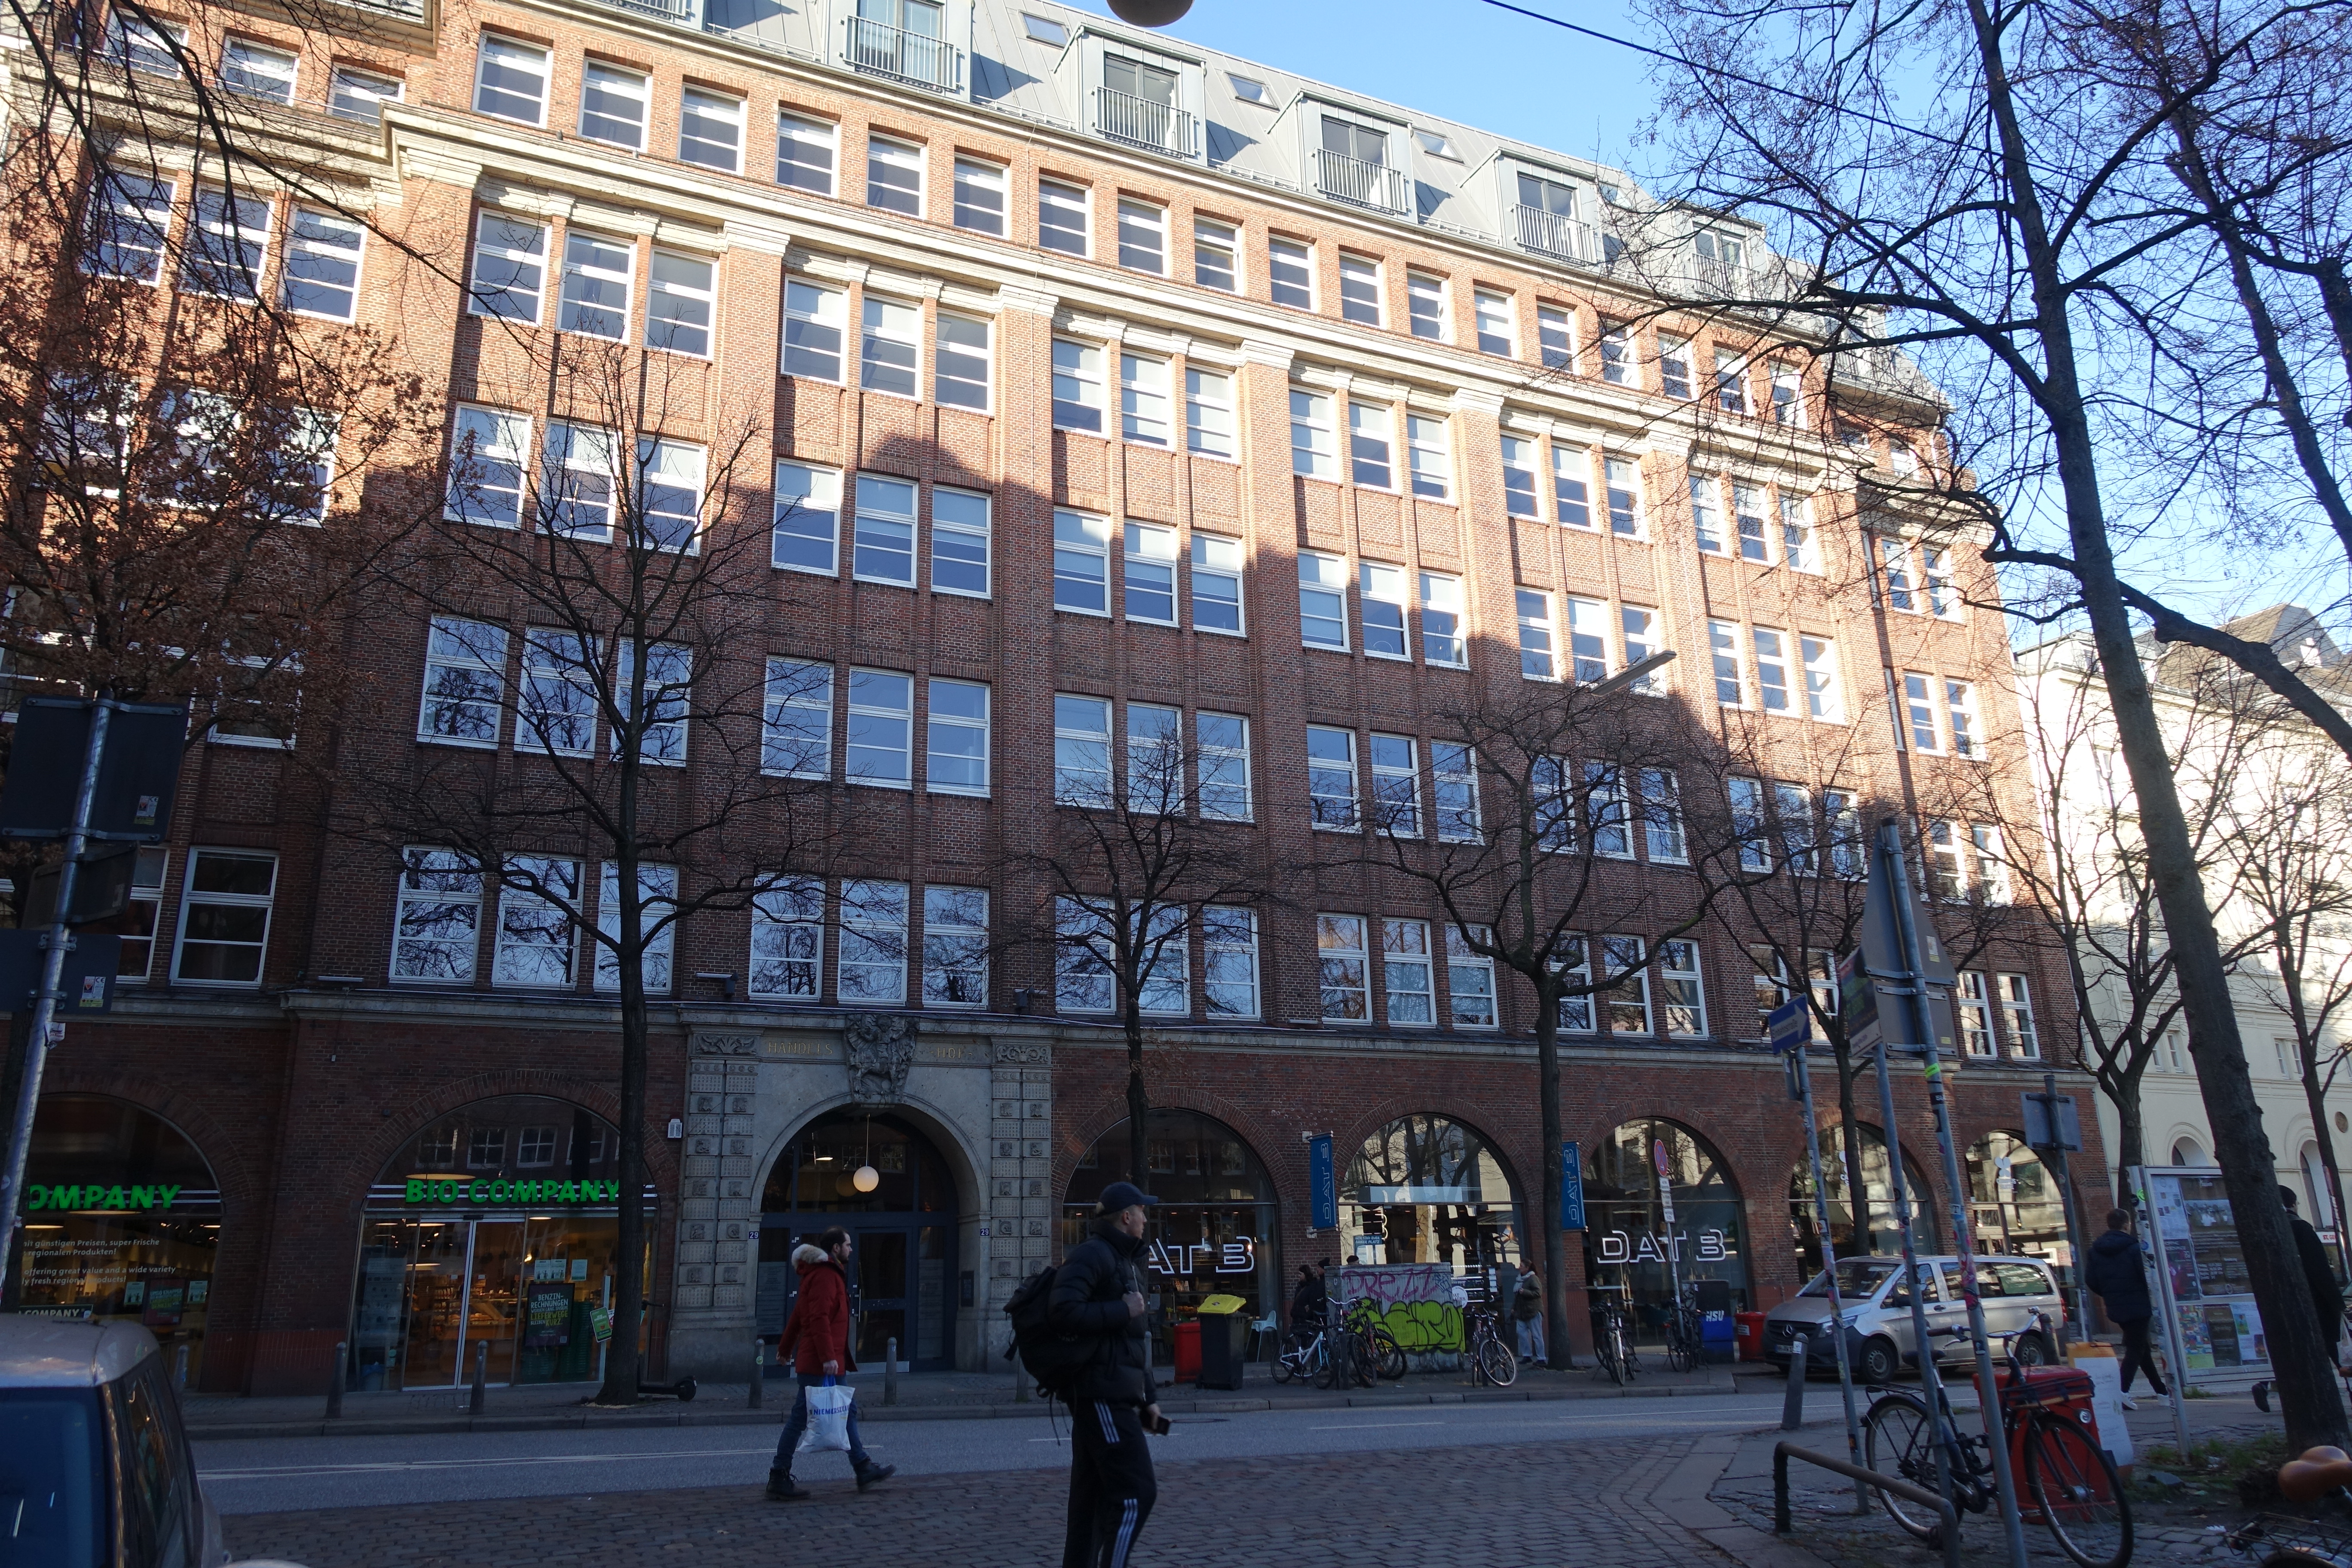 Kontorhaus Handelshof, Hamburg-St. Georg